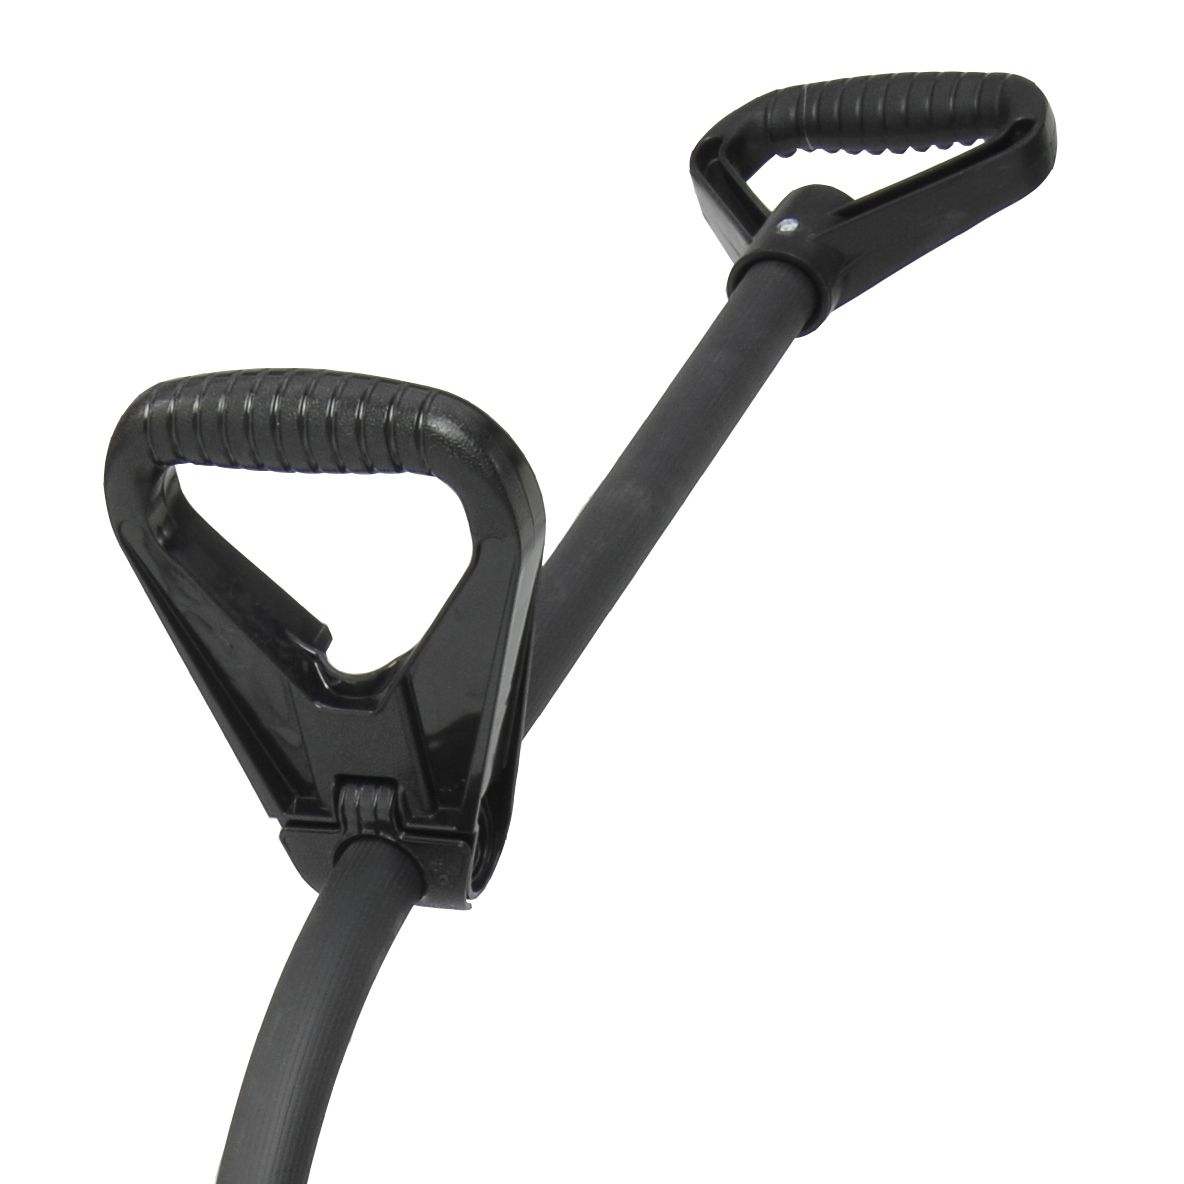 Suncast 5-PACK 18 in. Double Grip Ergonomic Combo Snow Shovels SC3950 Suncast double grip shovel that makes the job easier.